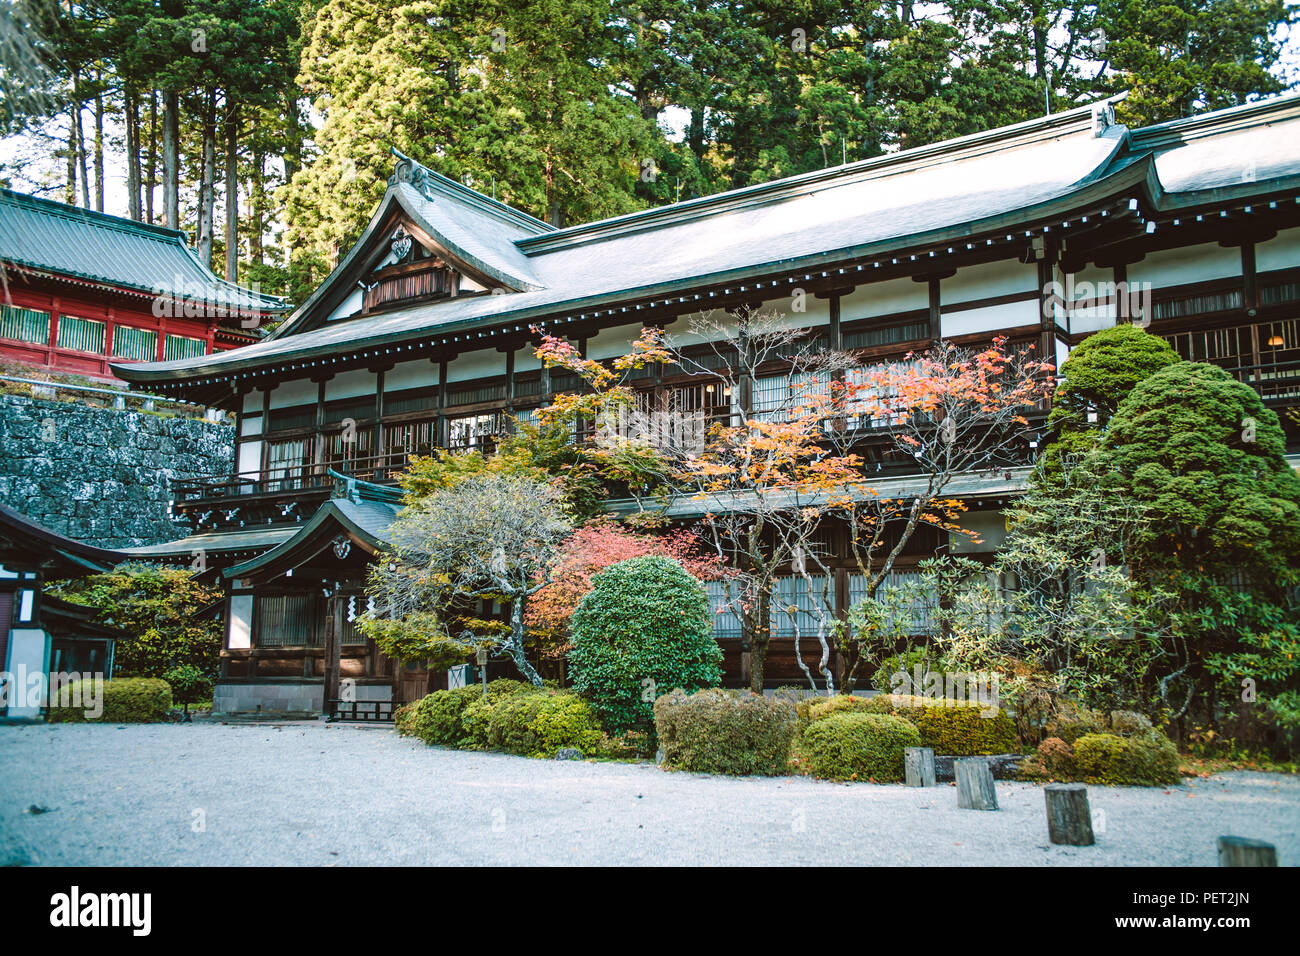 Nikko, Japan Temple Scenery Stock Photo